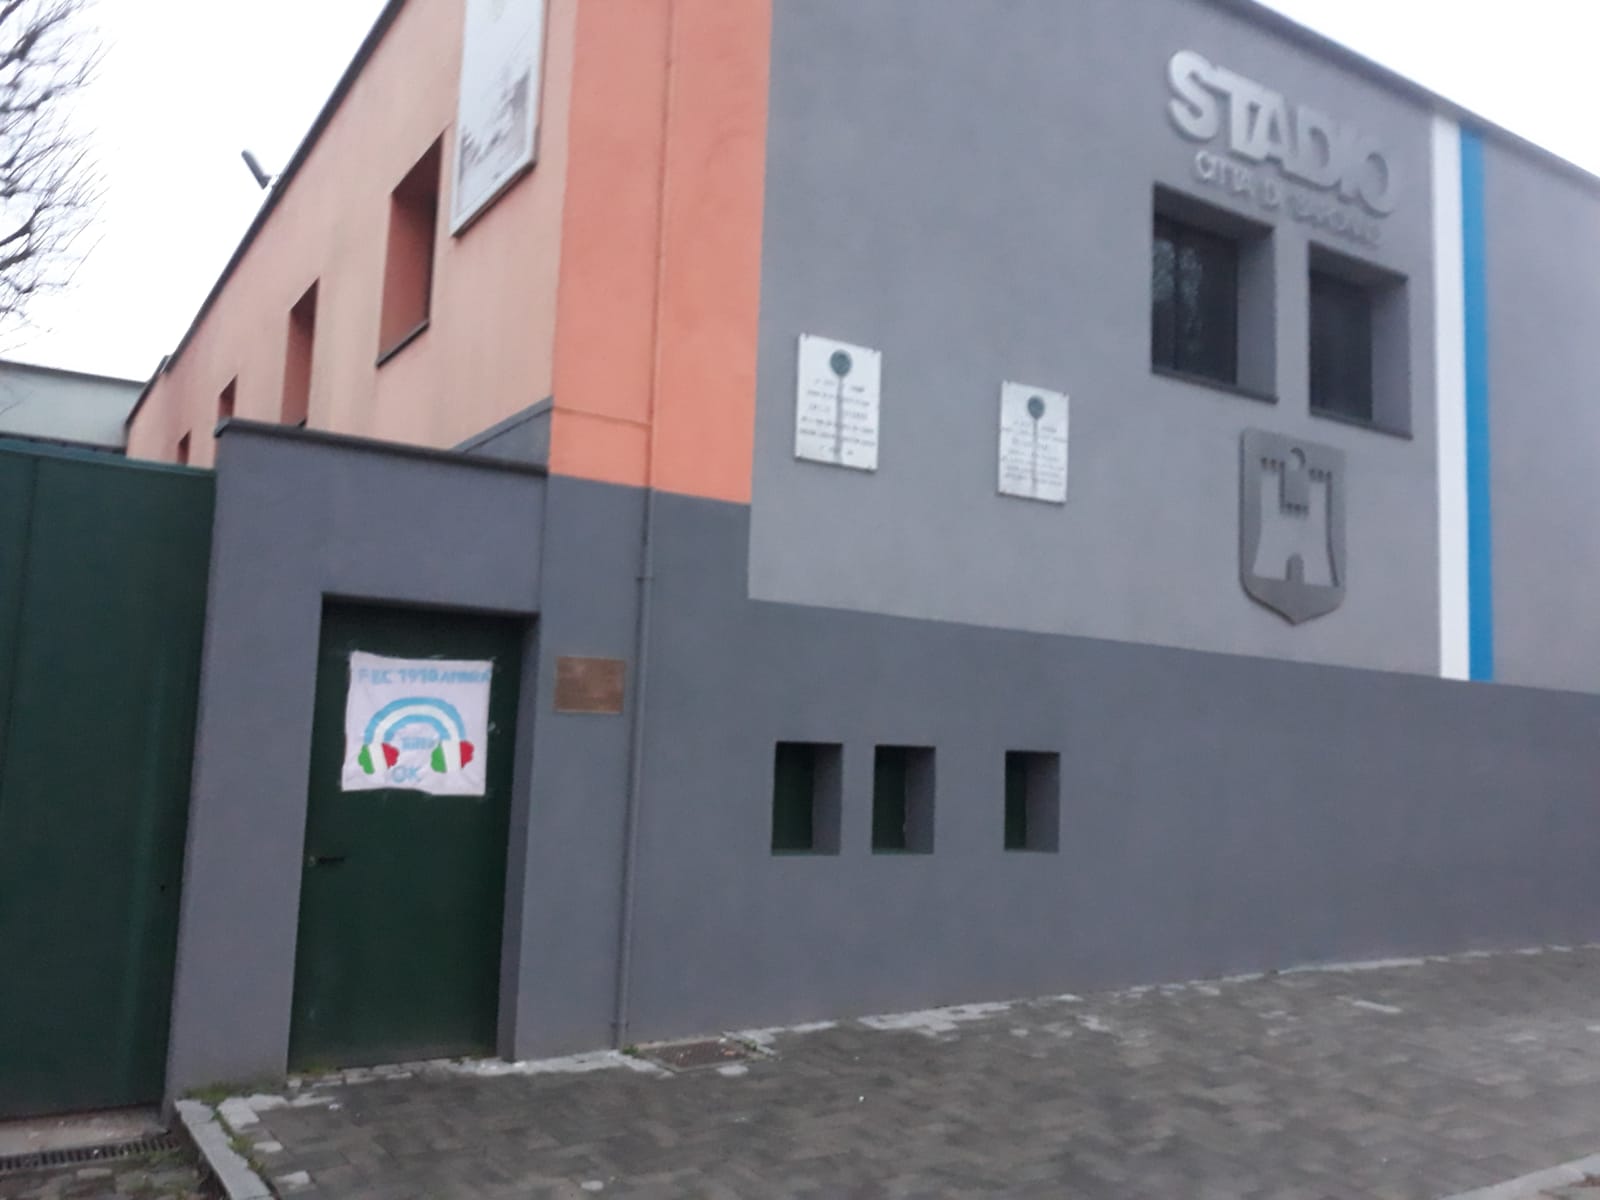 Buon completanno Fbc Saronno, anche sulla porta dello stadio Colombo Gianetti